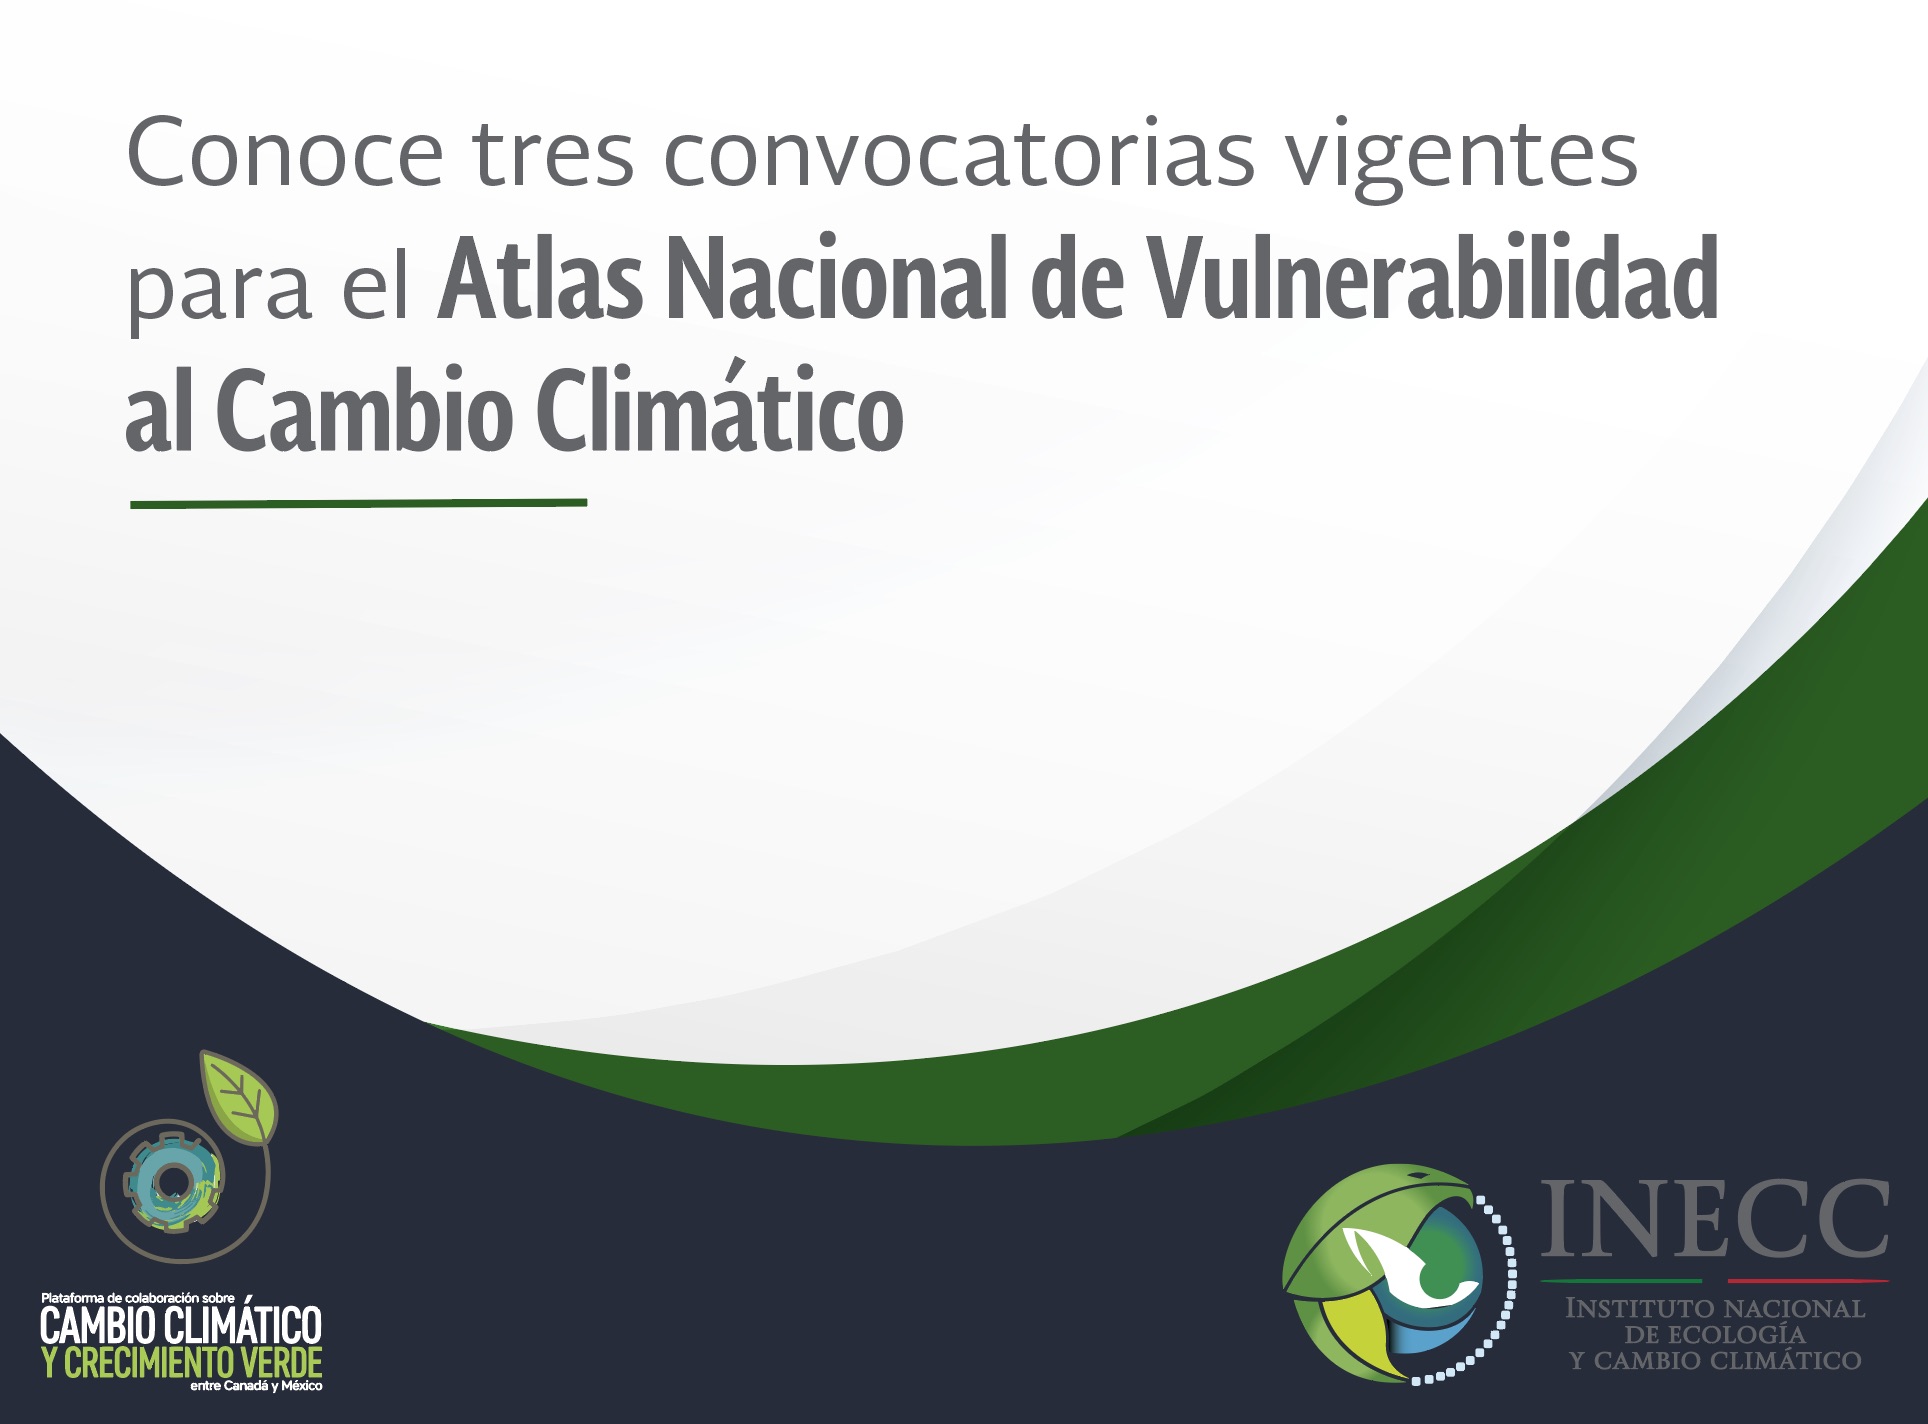 Convocatorias vigentes para el Atlas de Vulnerabilidad al Cambio Climático